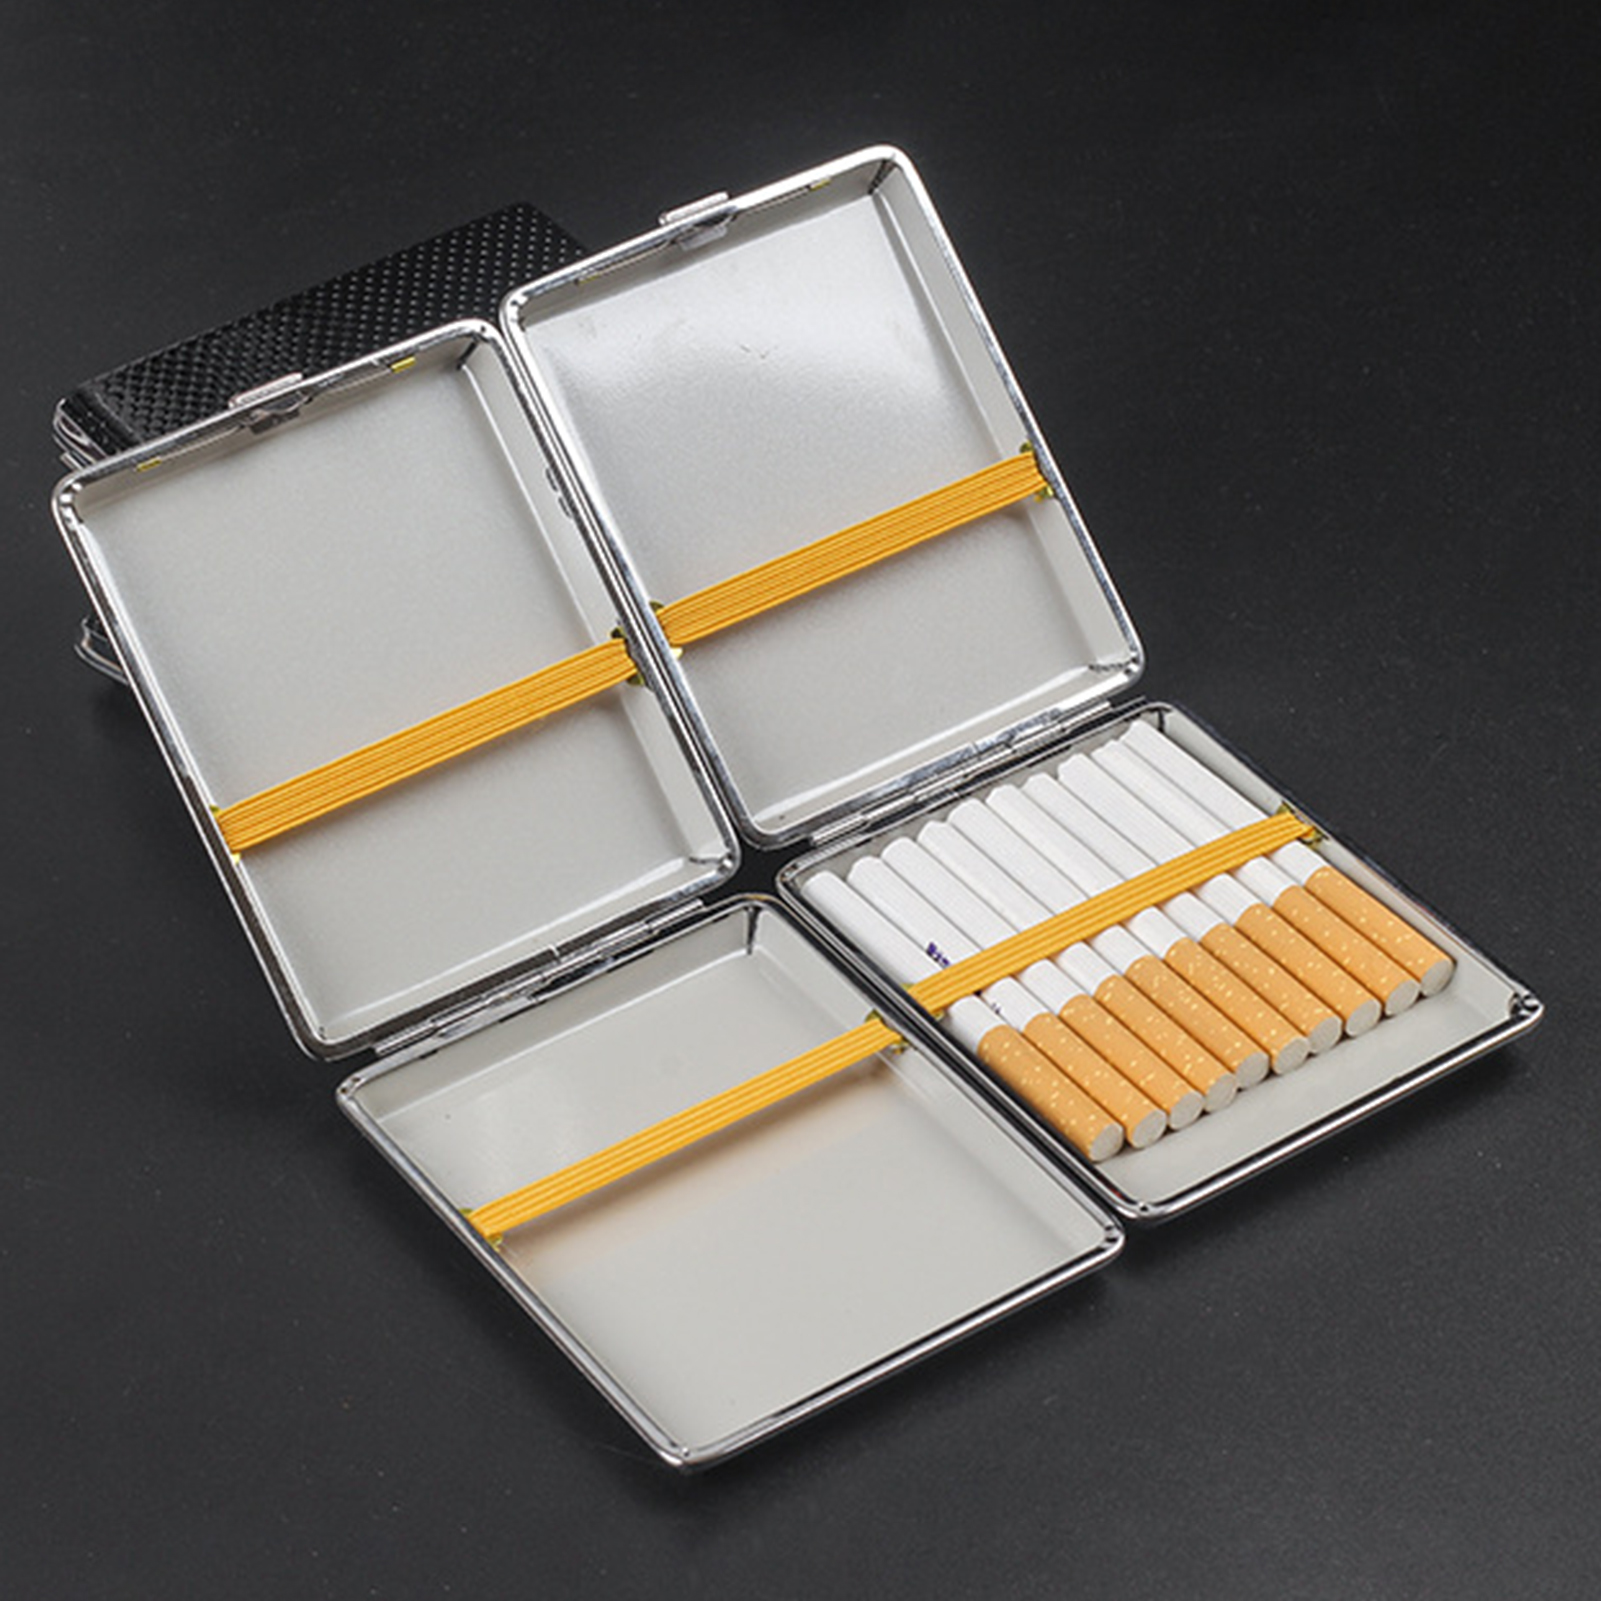 Dream Lifestyle Cigarette Storage Case, Cigarette Storage Box, Metal Cigarette Box Case, Cigarette Box Holder Holds 100mm 20 Cigarette Case Tobacco